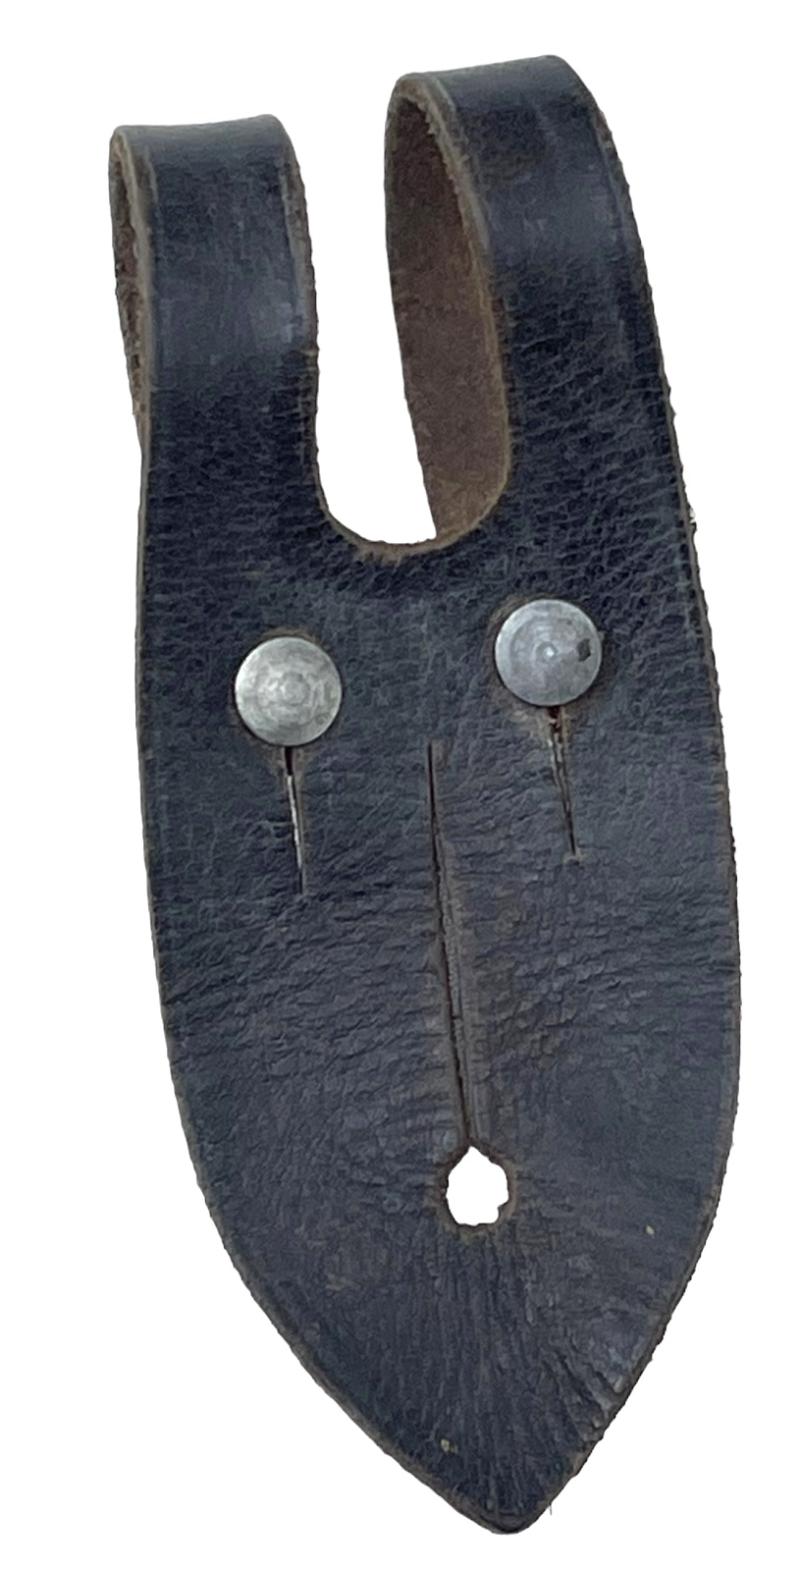 Wehrmacht Binoculars leather button attachment piece.